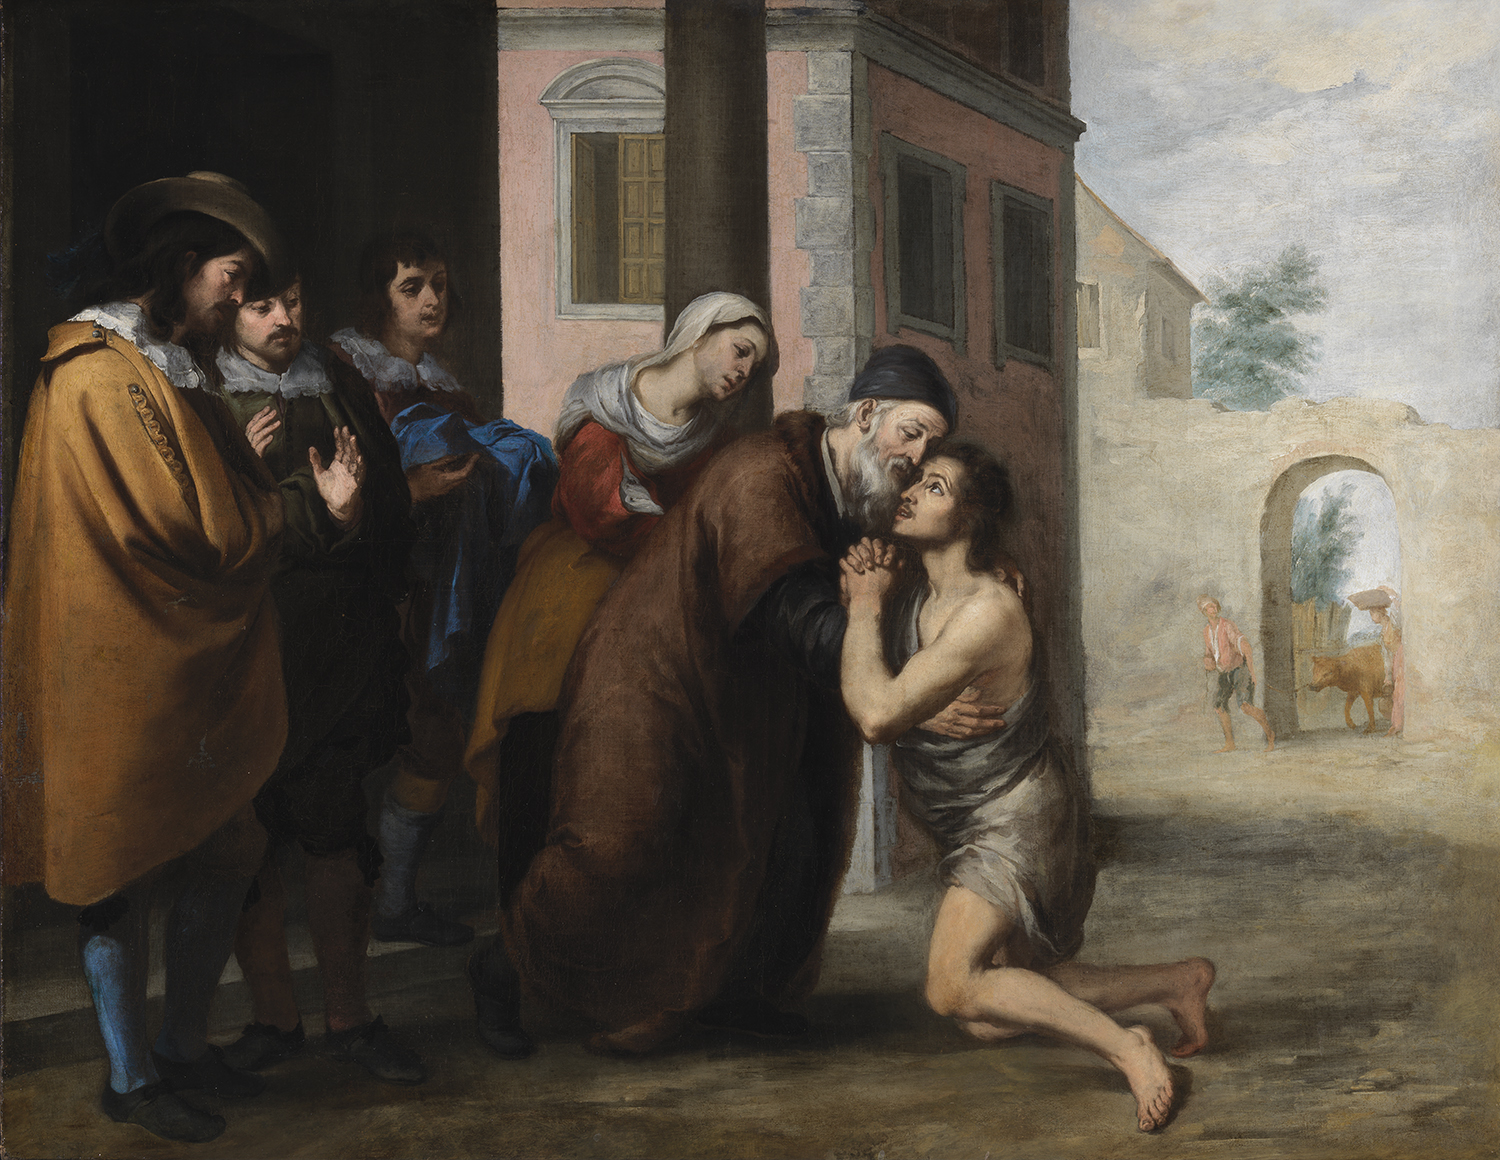 Повернення блудного сина by Bartolomé Esteban Murillo - бл.1660 - 104.5 x 134.5 см 